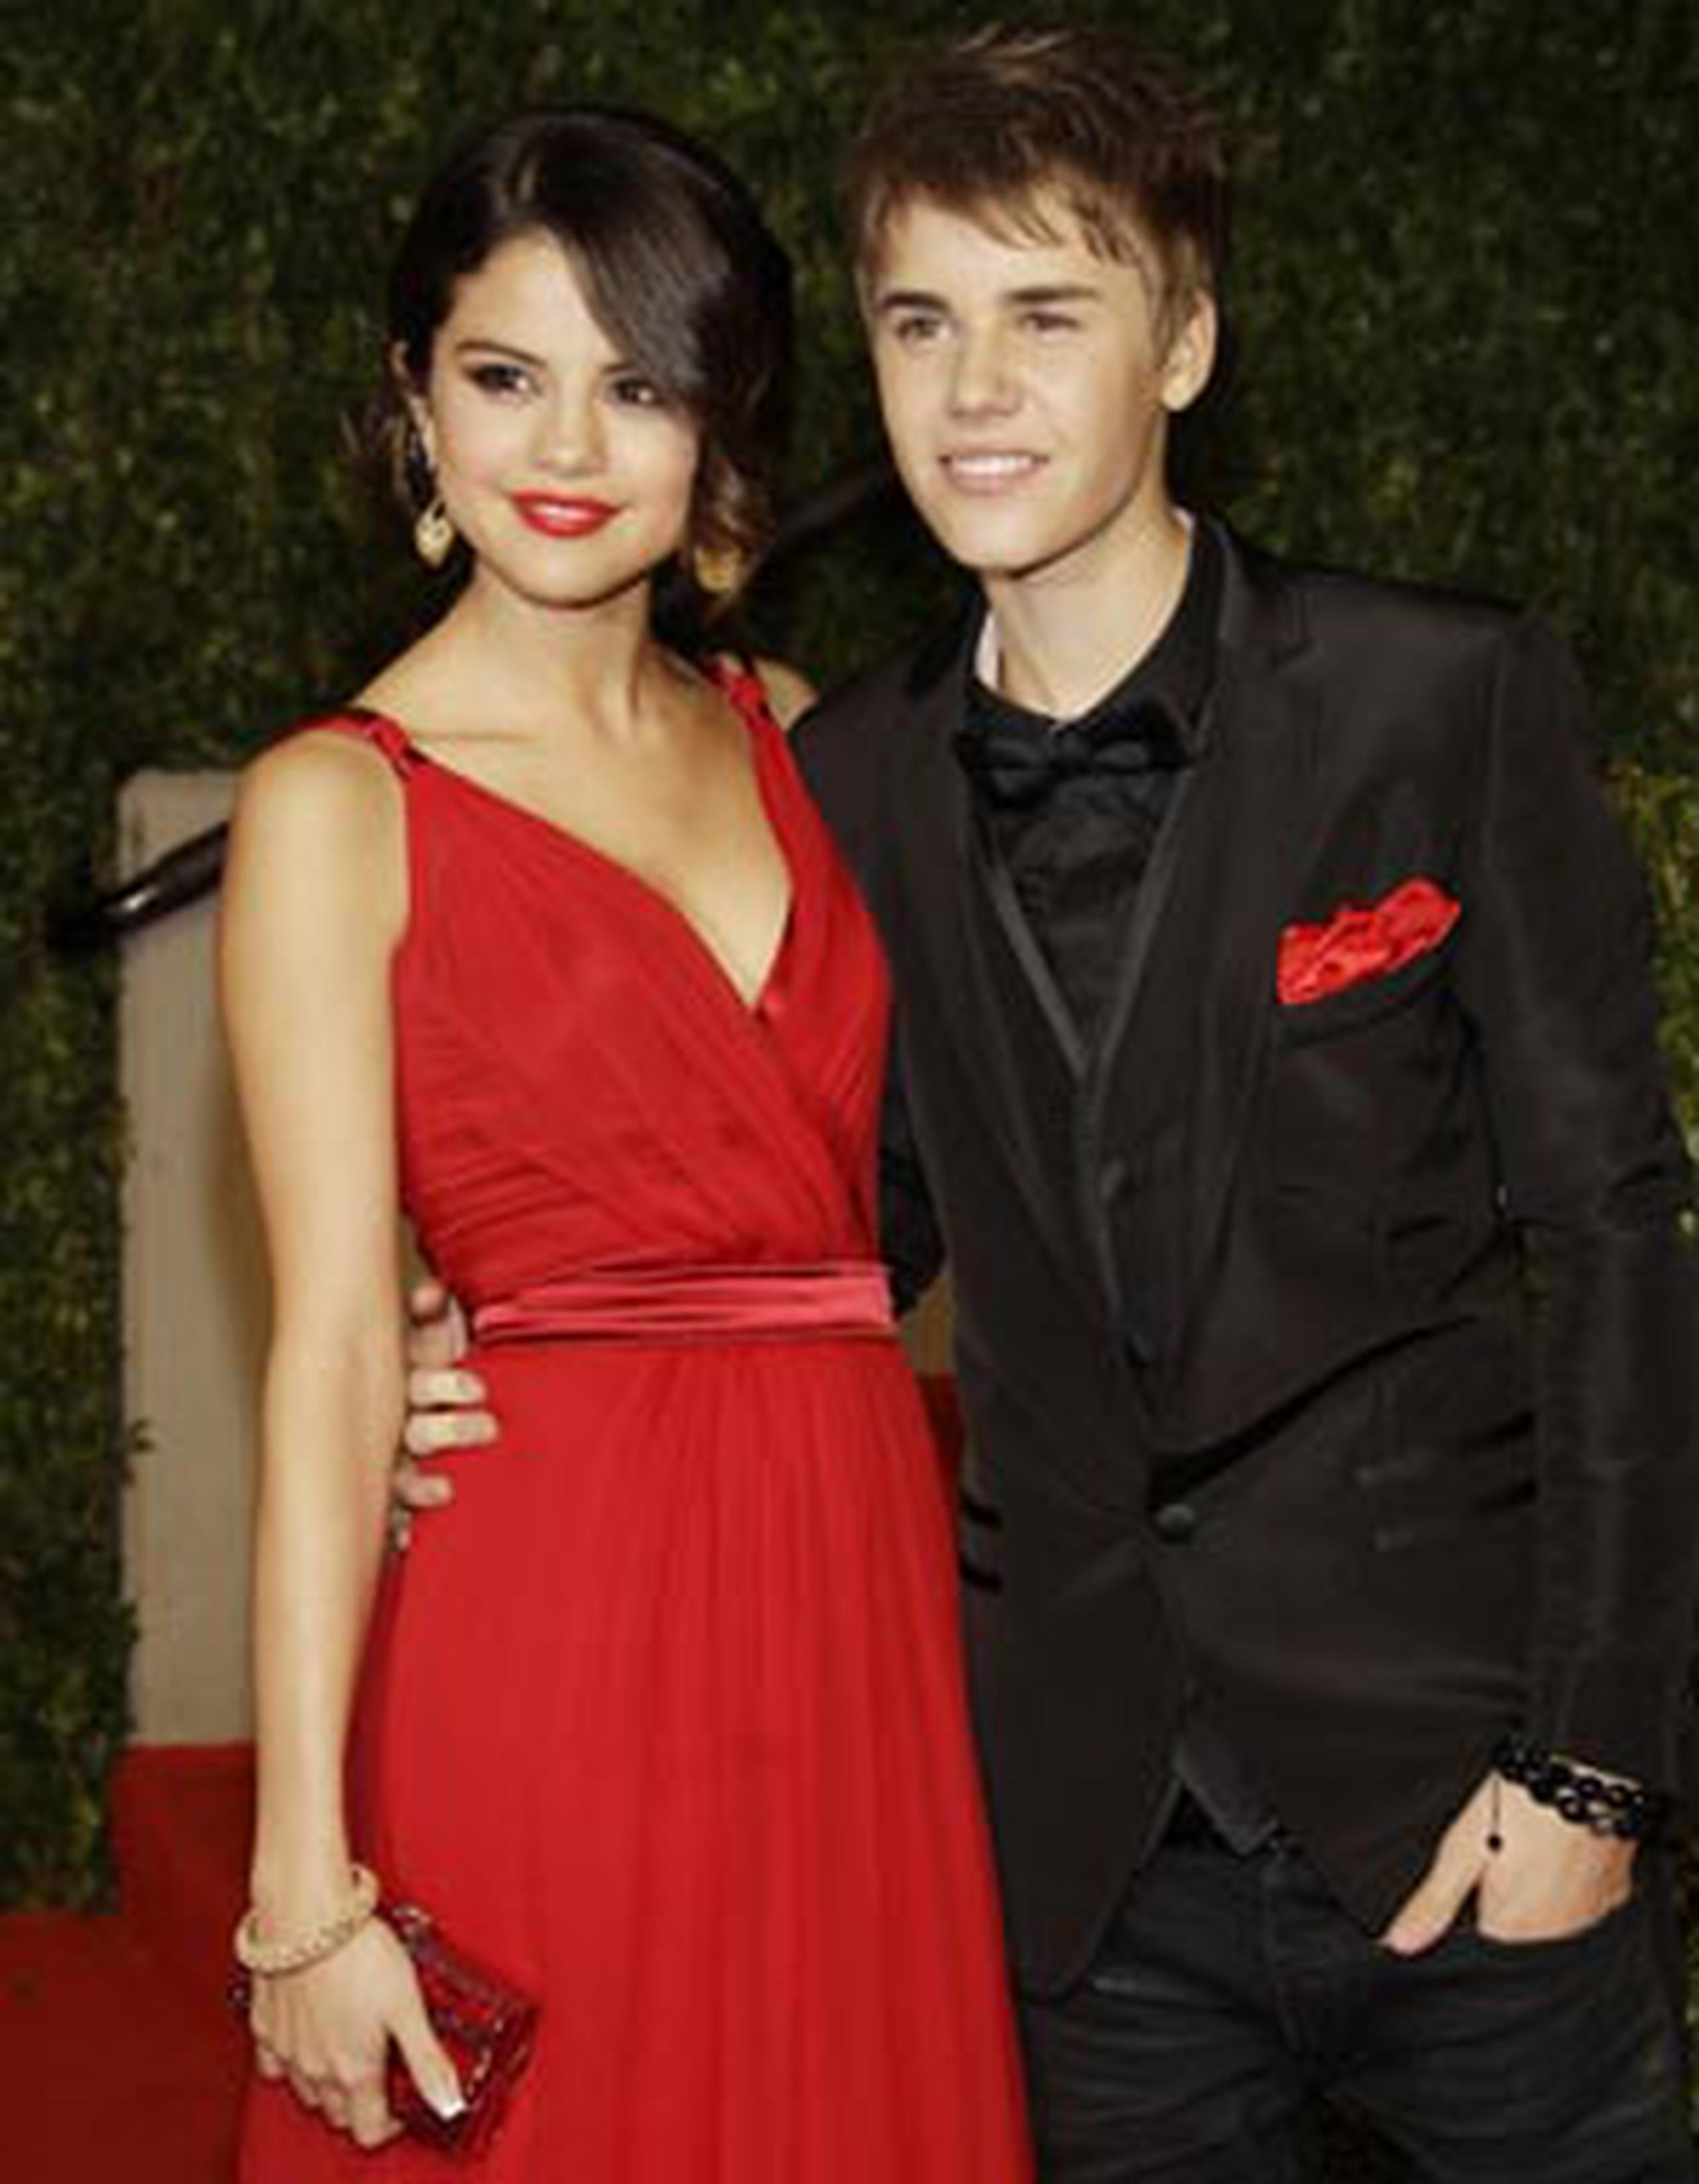 La antigua pareja confirmó su relación en 2011 al asistir a la fiesta posterior a los Oscars organizada por Vanity Fair. (Archivo)